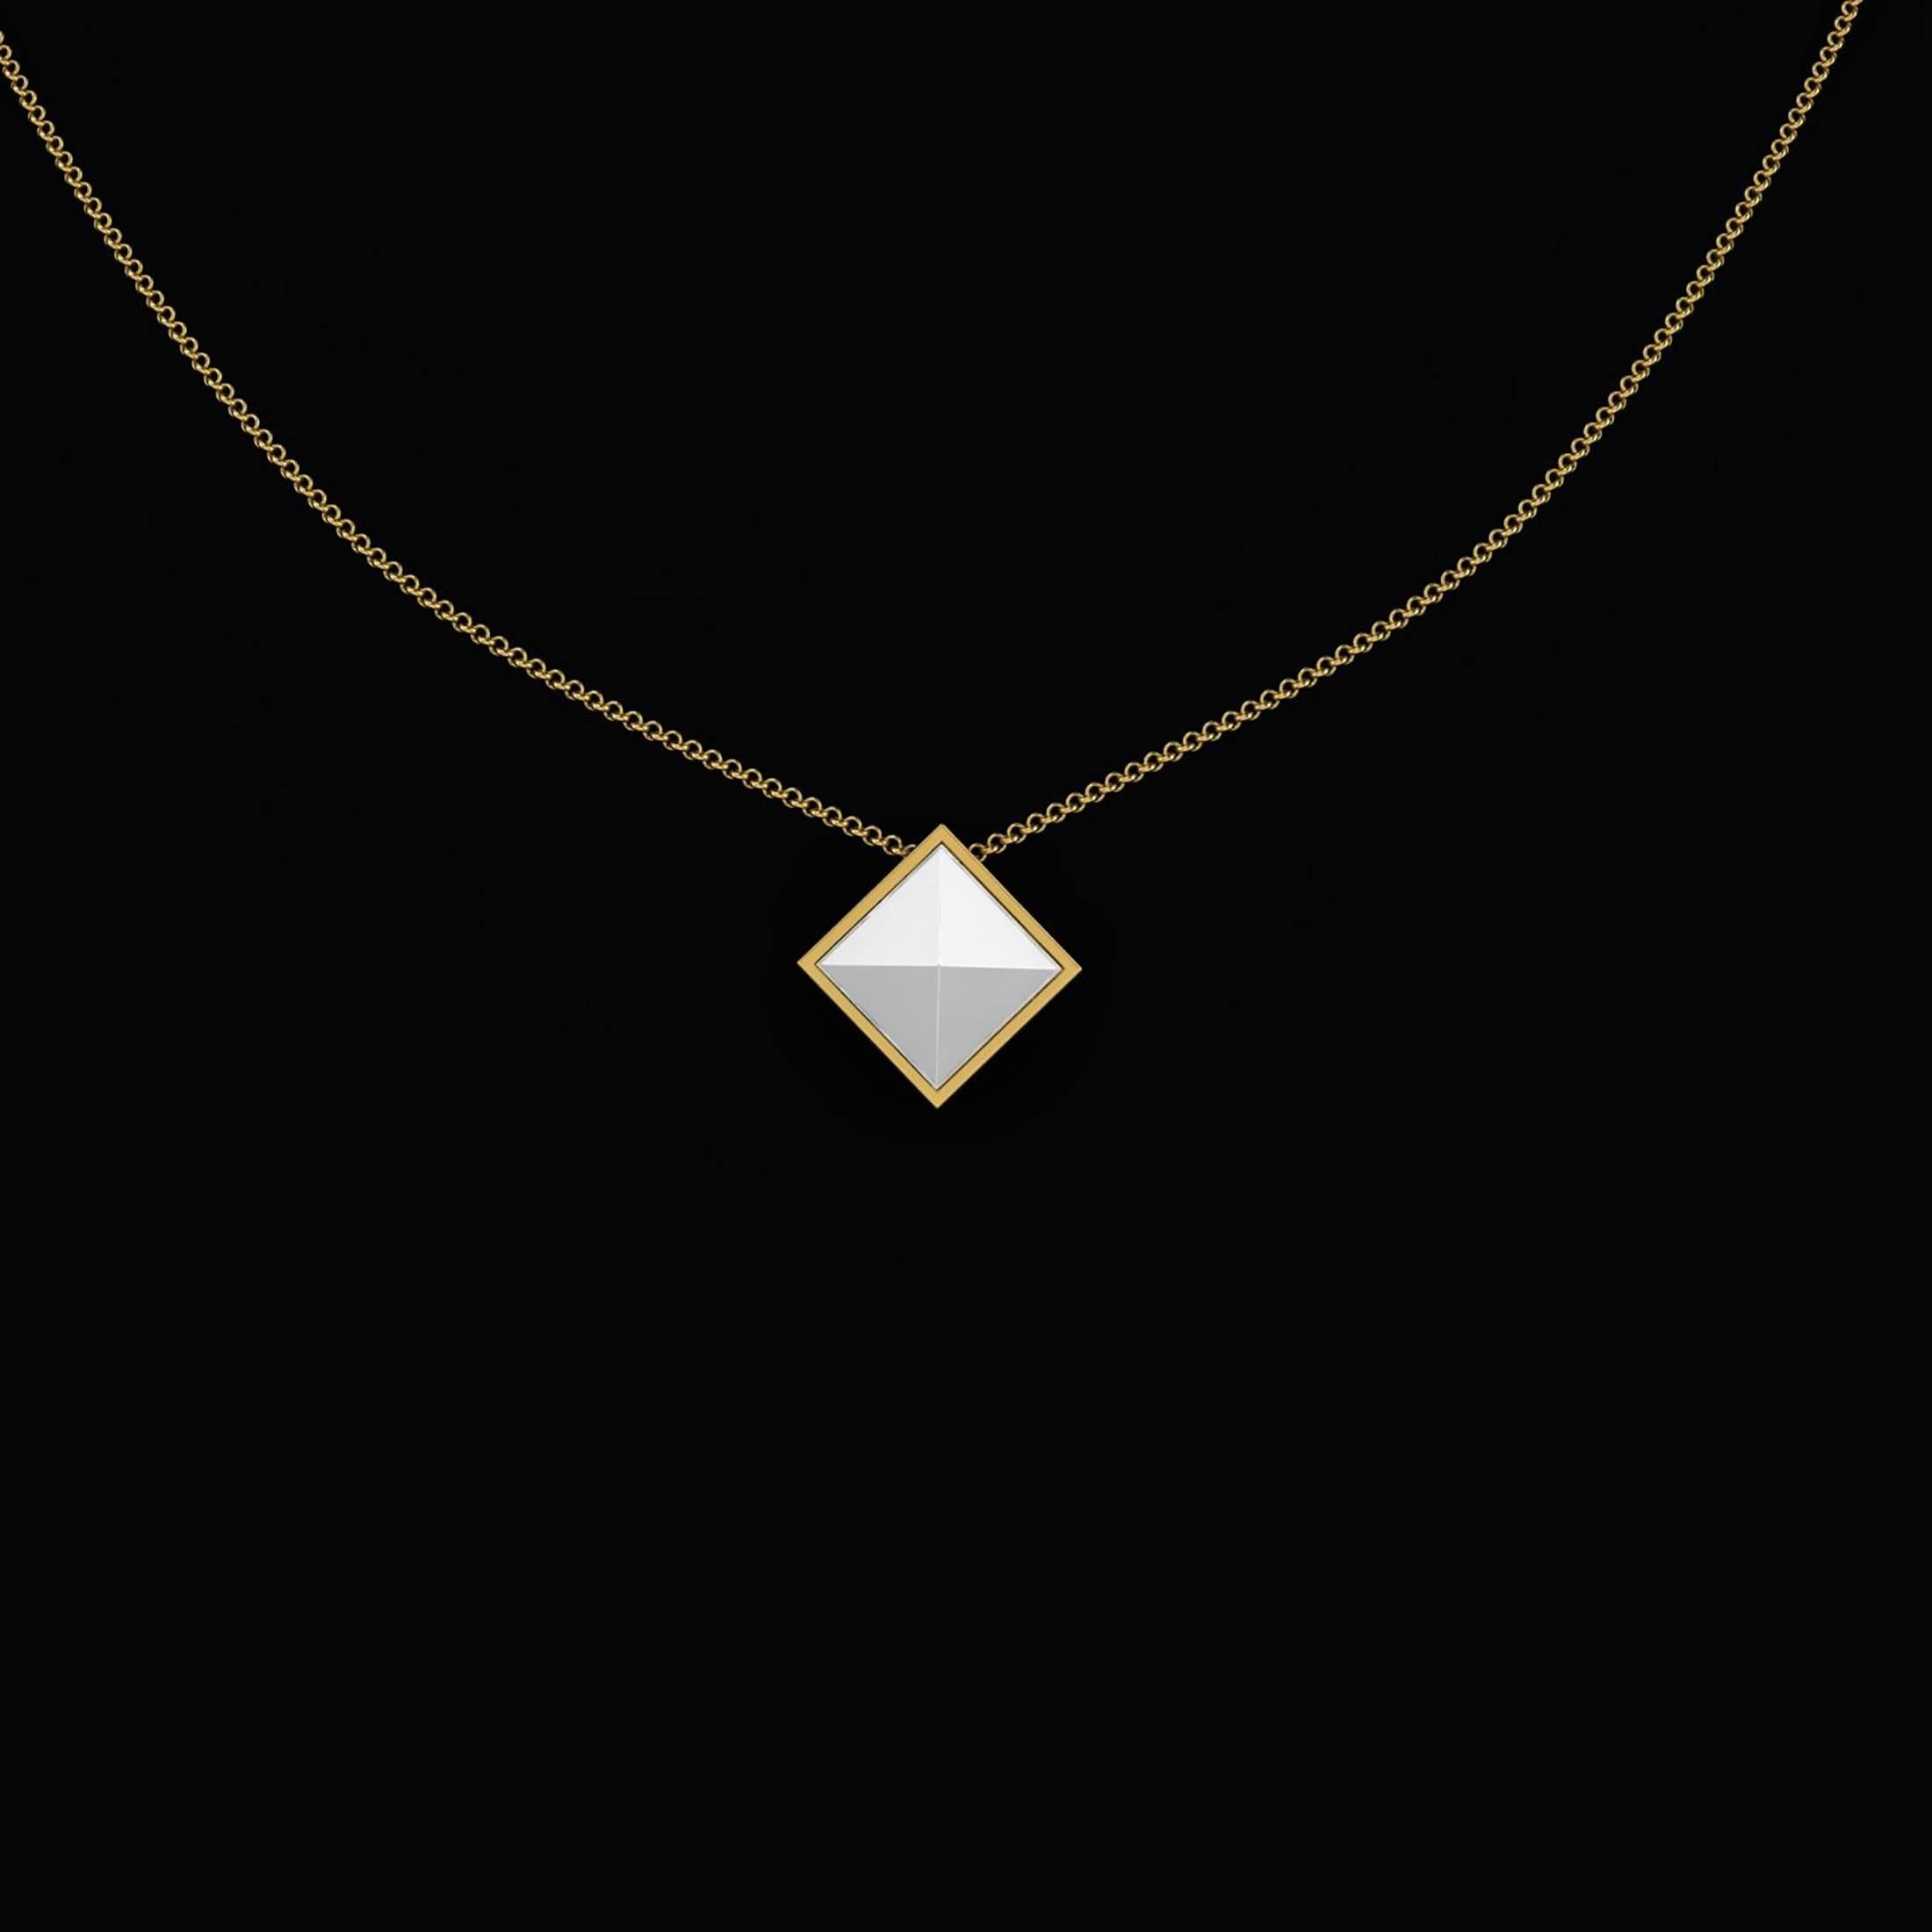 Weißer Achat Pyramide Halskette Anhänger, in 18k Gelbgold Halskette gefasst, handgefertigt in New York von italienischen Designer Francesco Ferrucci,
die Kette kann je nach Kleidung und Vorliebe bei 16, 18 oder 20 Zoll geschlossen werden.
Einfach zu